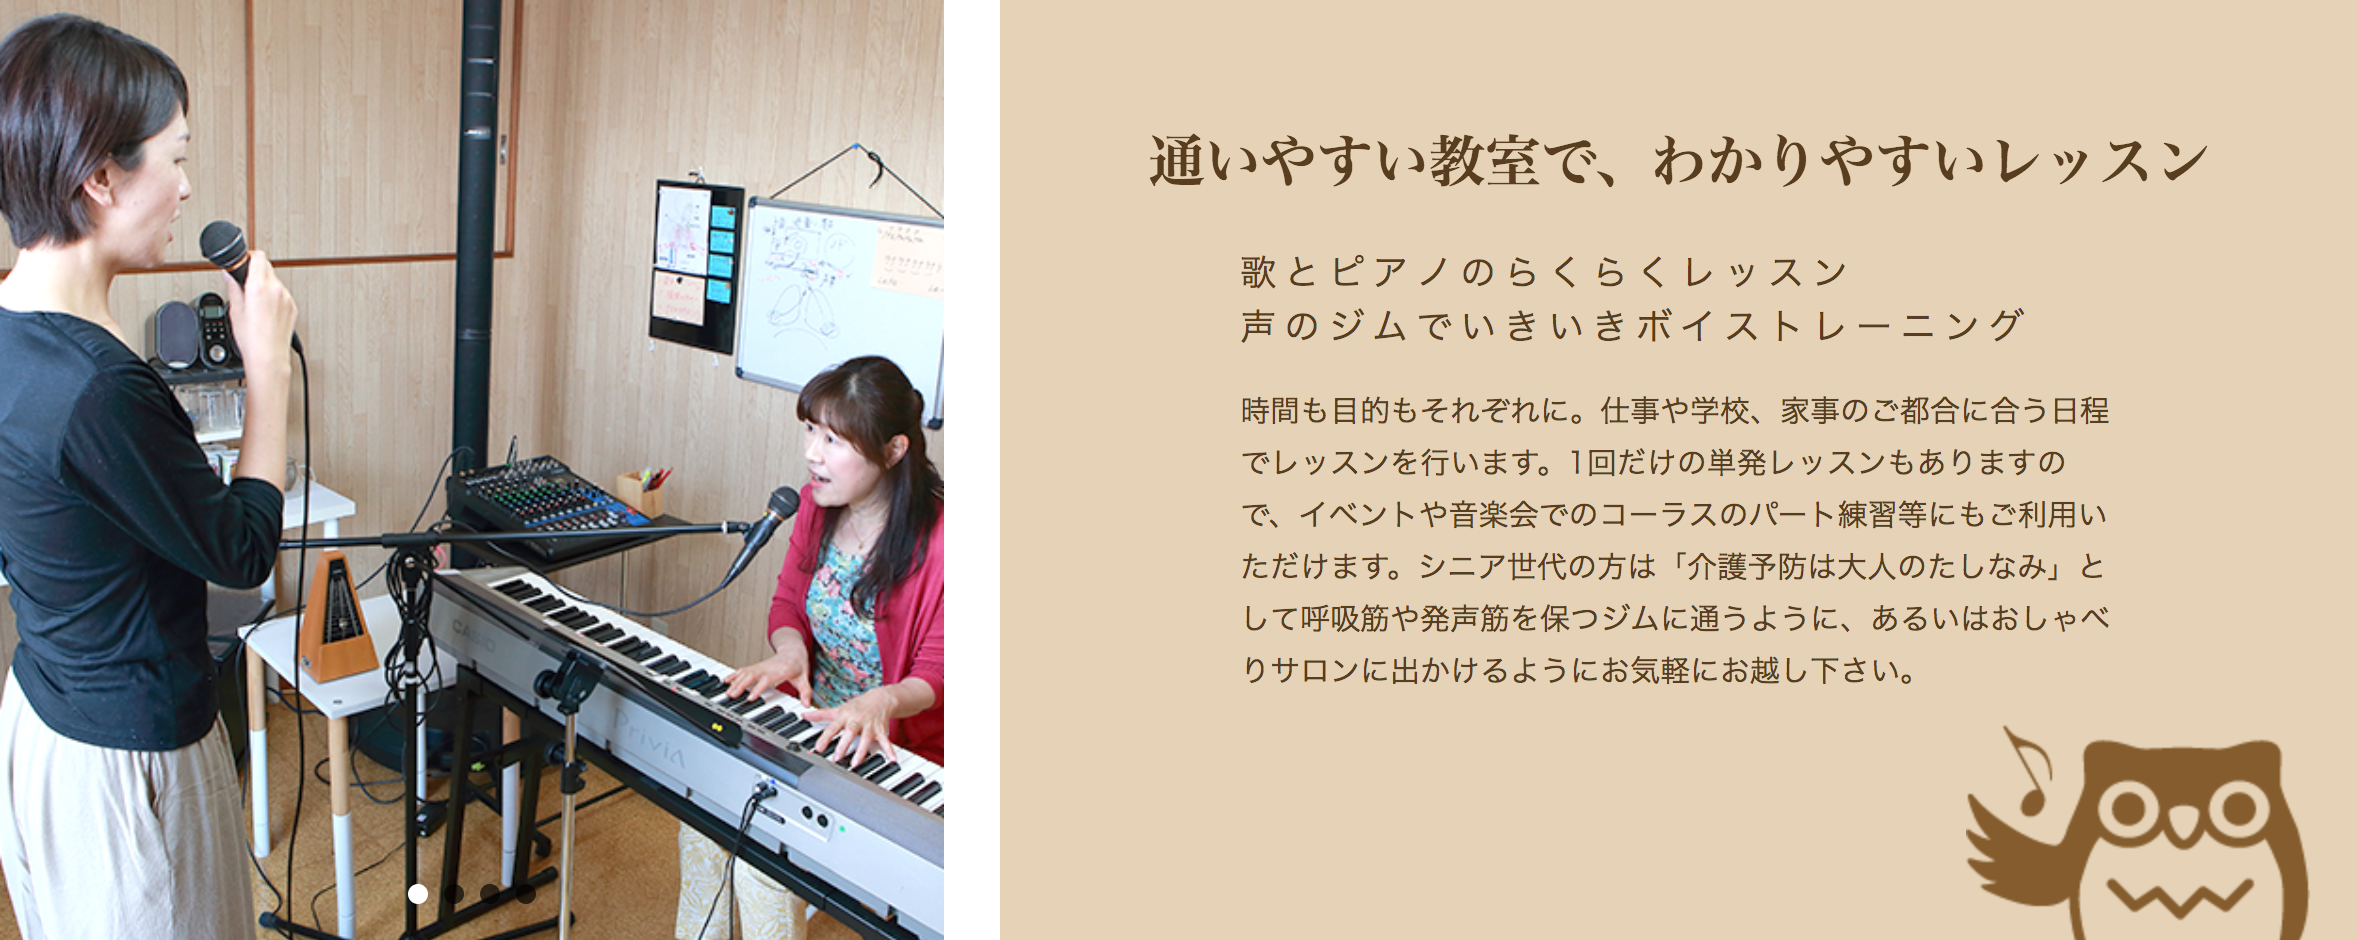 5位 柳原純子音楽教室